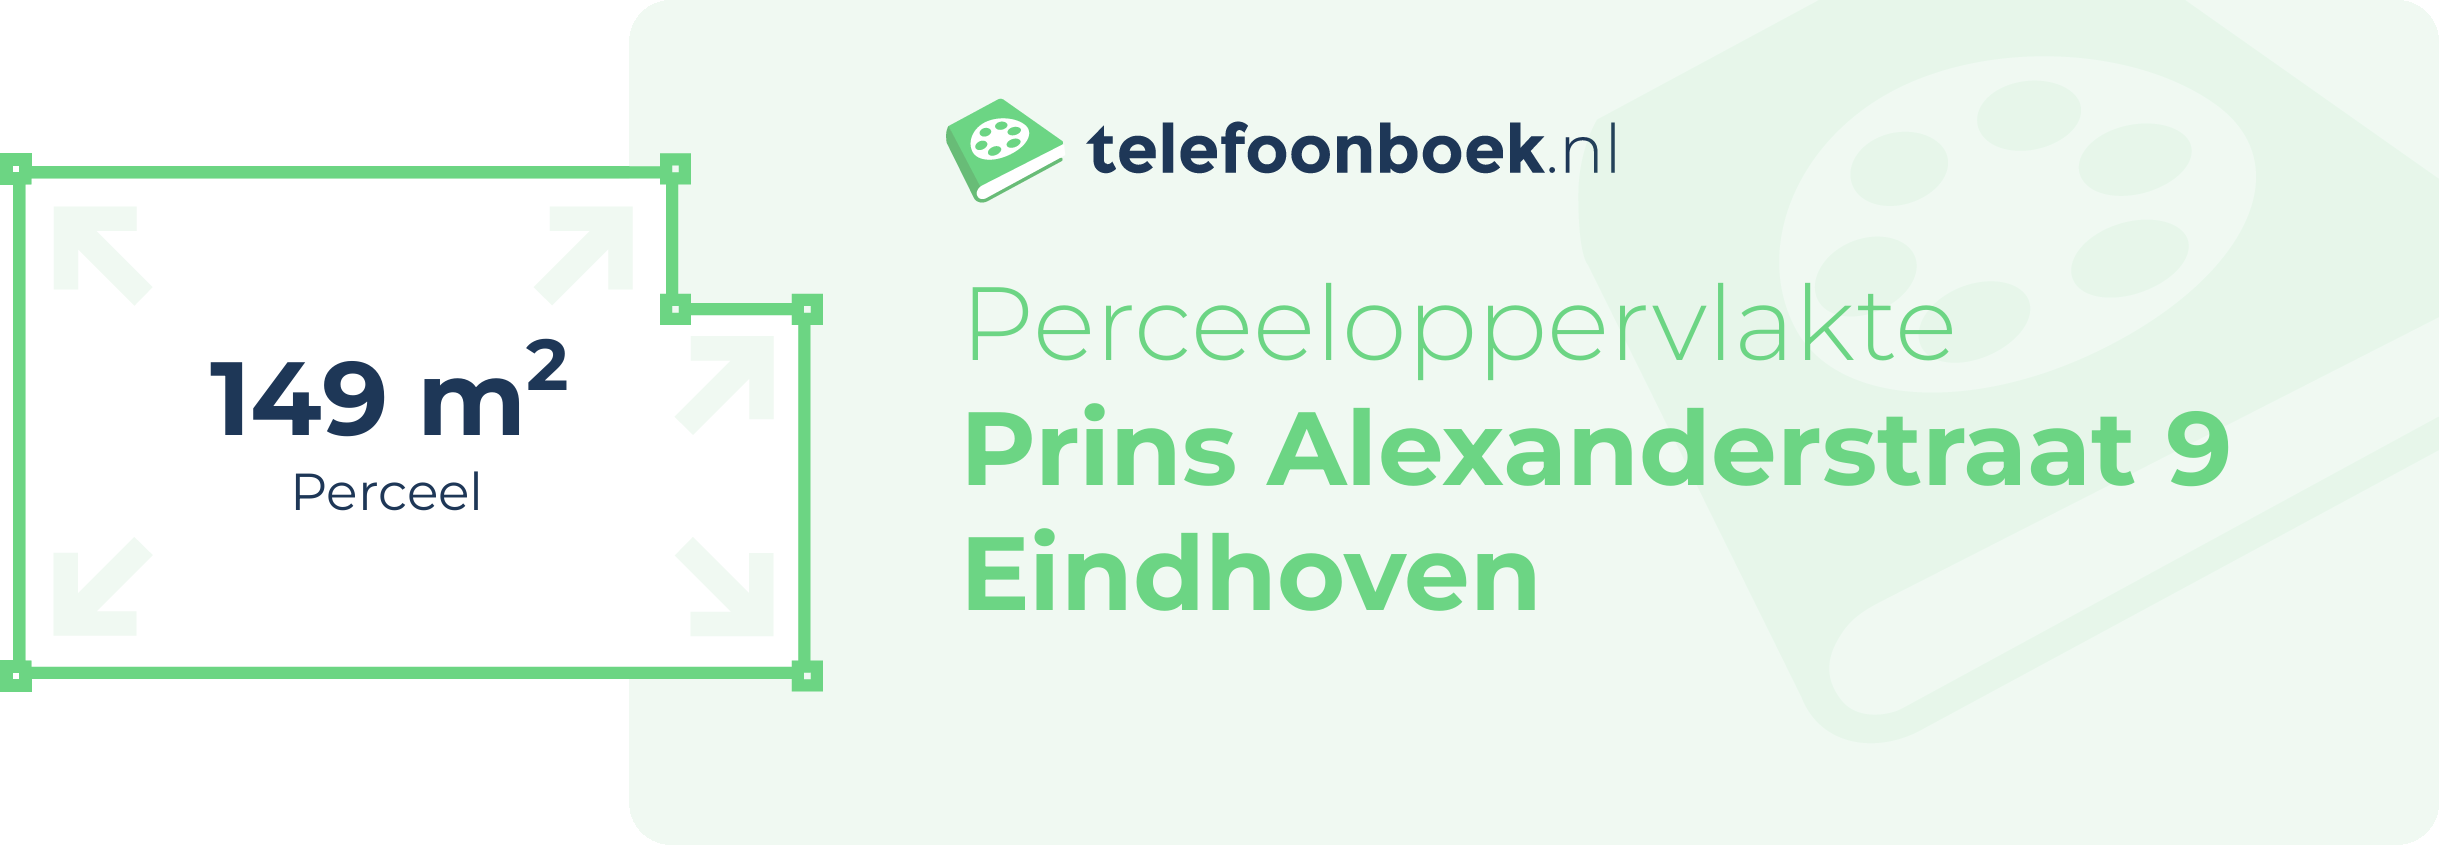 Perceeloppervlakte Prins Alexanderstraat 9 Eindhoven